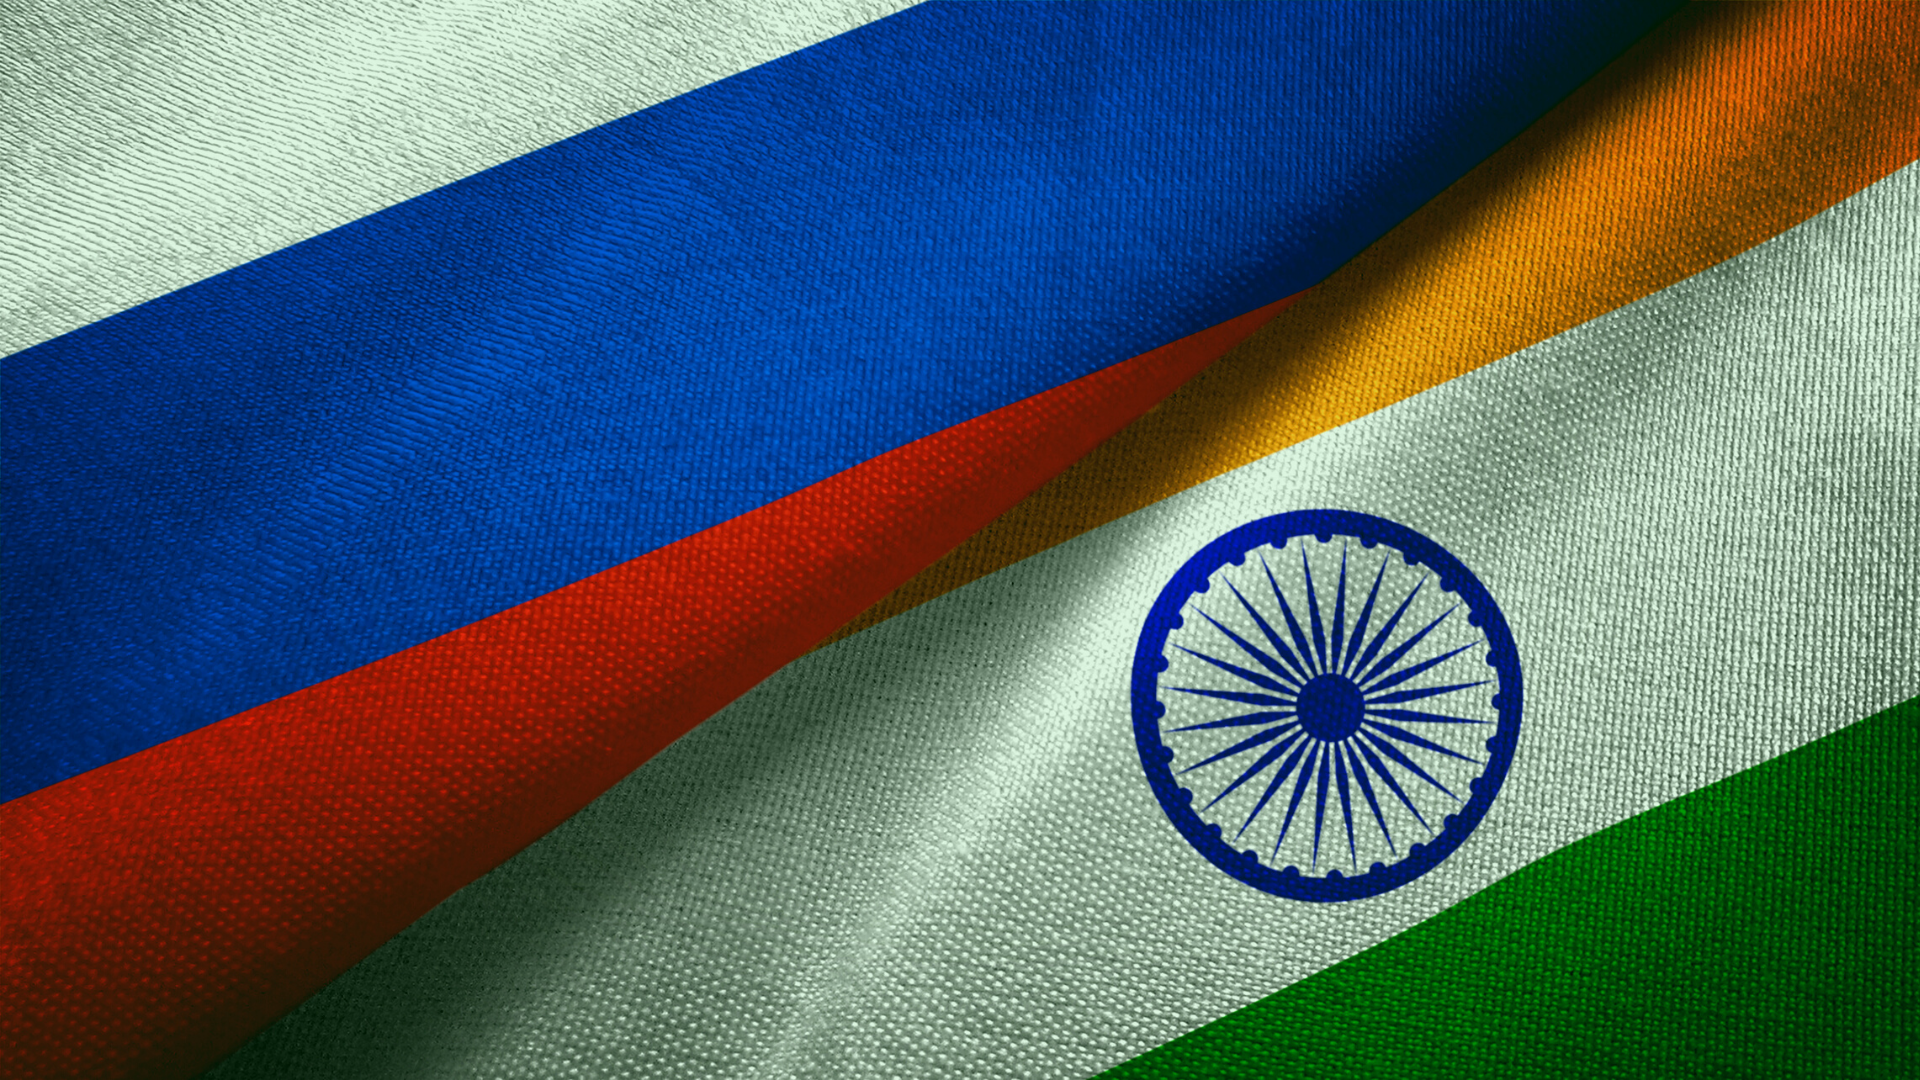 ماسکو-ہندستان تجارت میں 2021 میں 60 فیصد سے زیادہ اضافہ